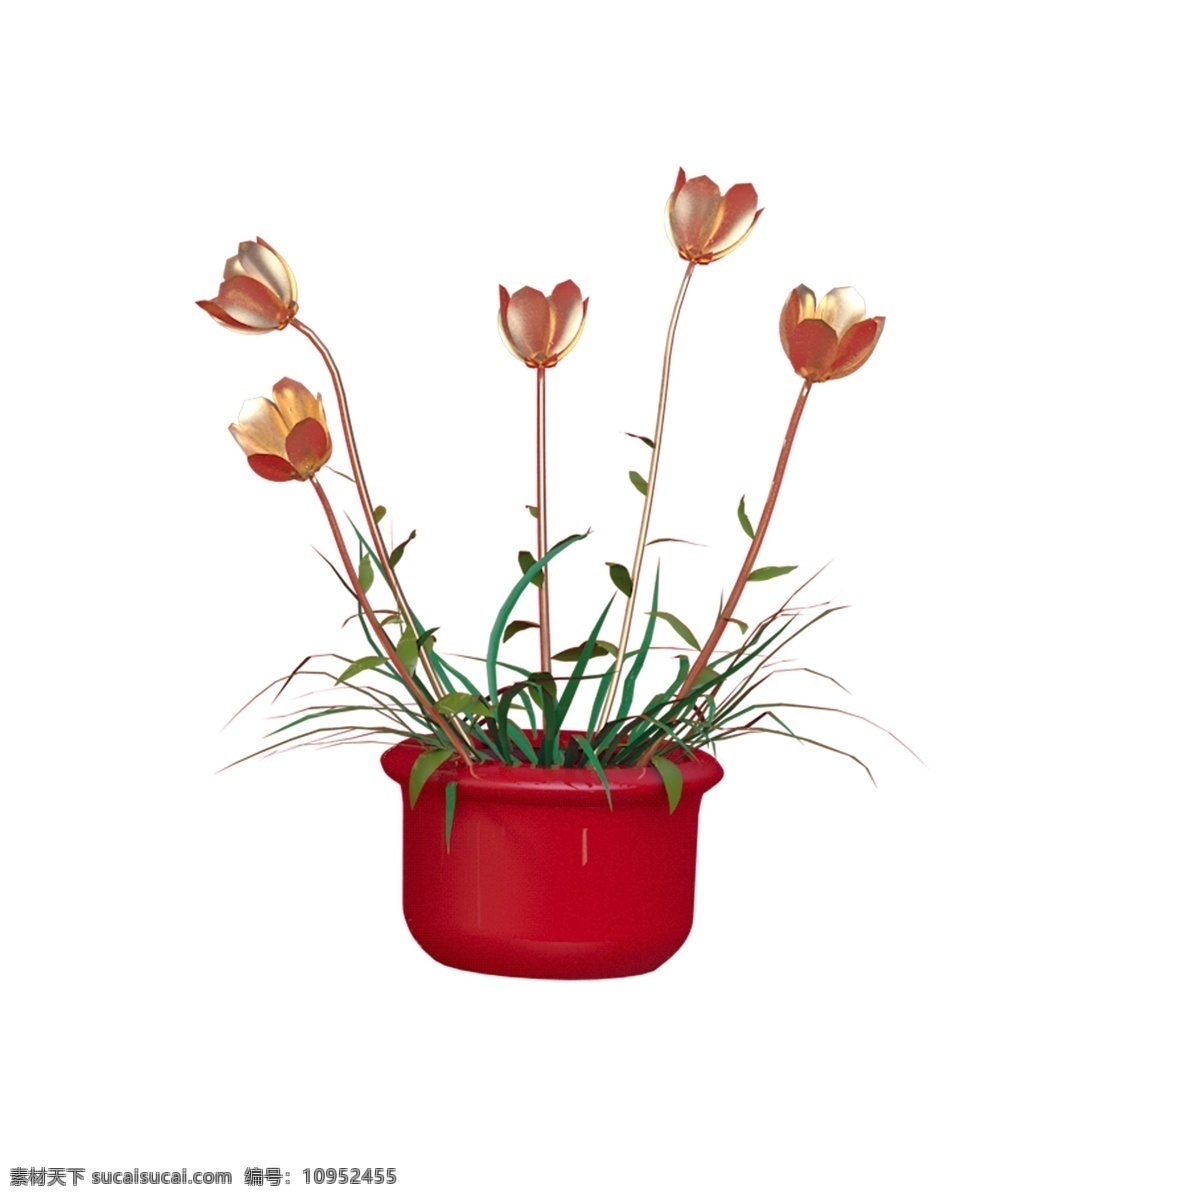 红色 创意 植物 花朵 元素 自然 环境 保护 景色 绽放 盆栽 大自然 叶子